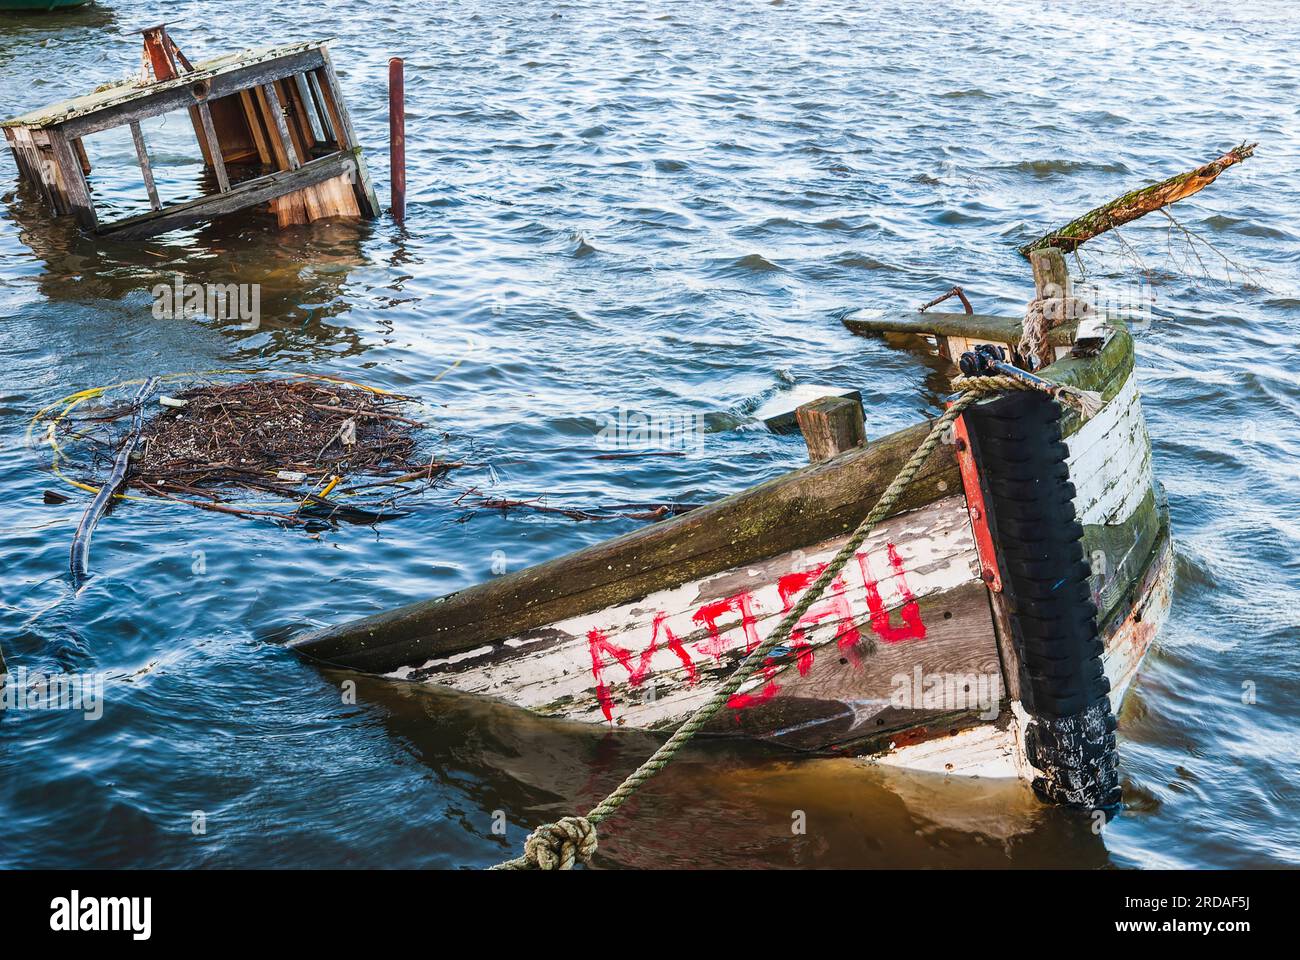 Ein gesunkenes Schiffswrack liegt auf dem Grund eines friedlichen Hafens, dessen Rumpf im sonnigen Meer schimmert. Stockfoto